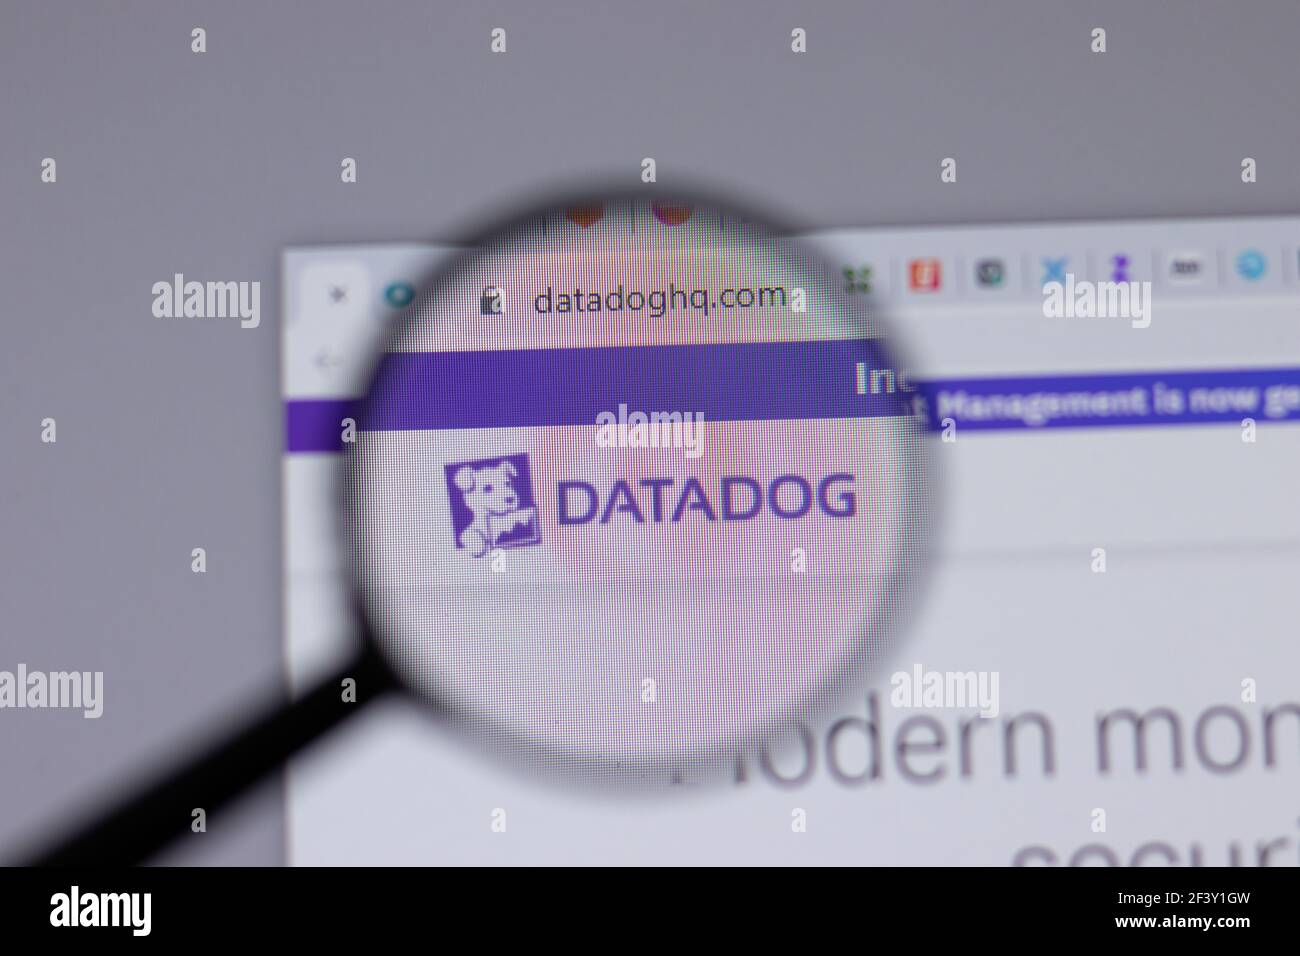 New York, USA - 18 Marzo 2021: Icona del logo della società Datadog sul sito, Editoriale illustrativo Foto Stock